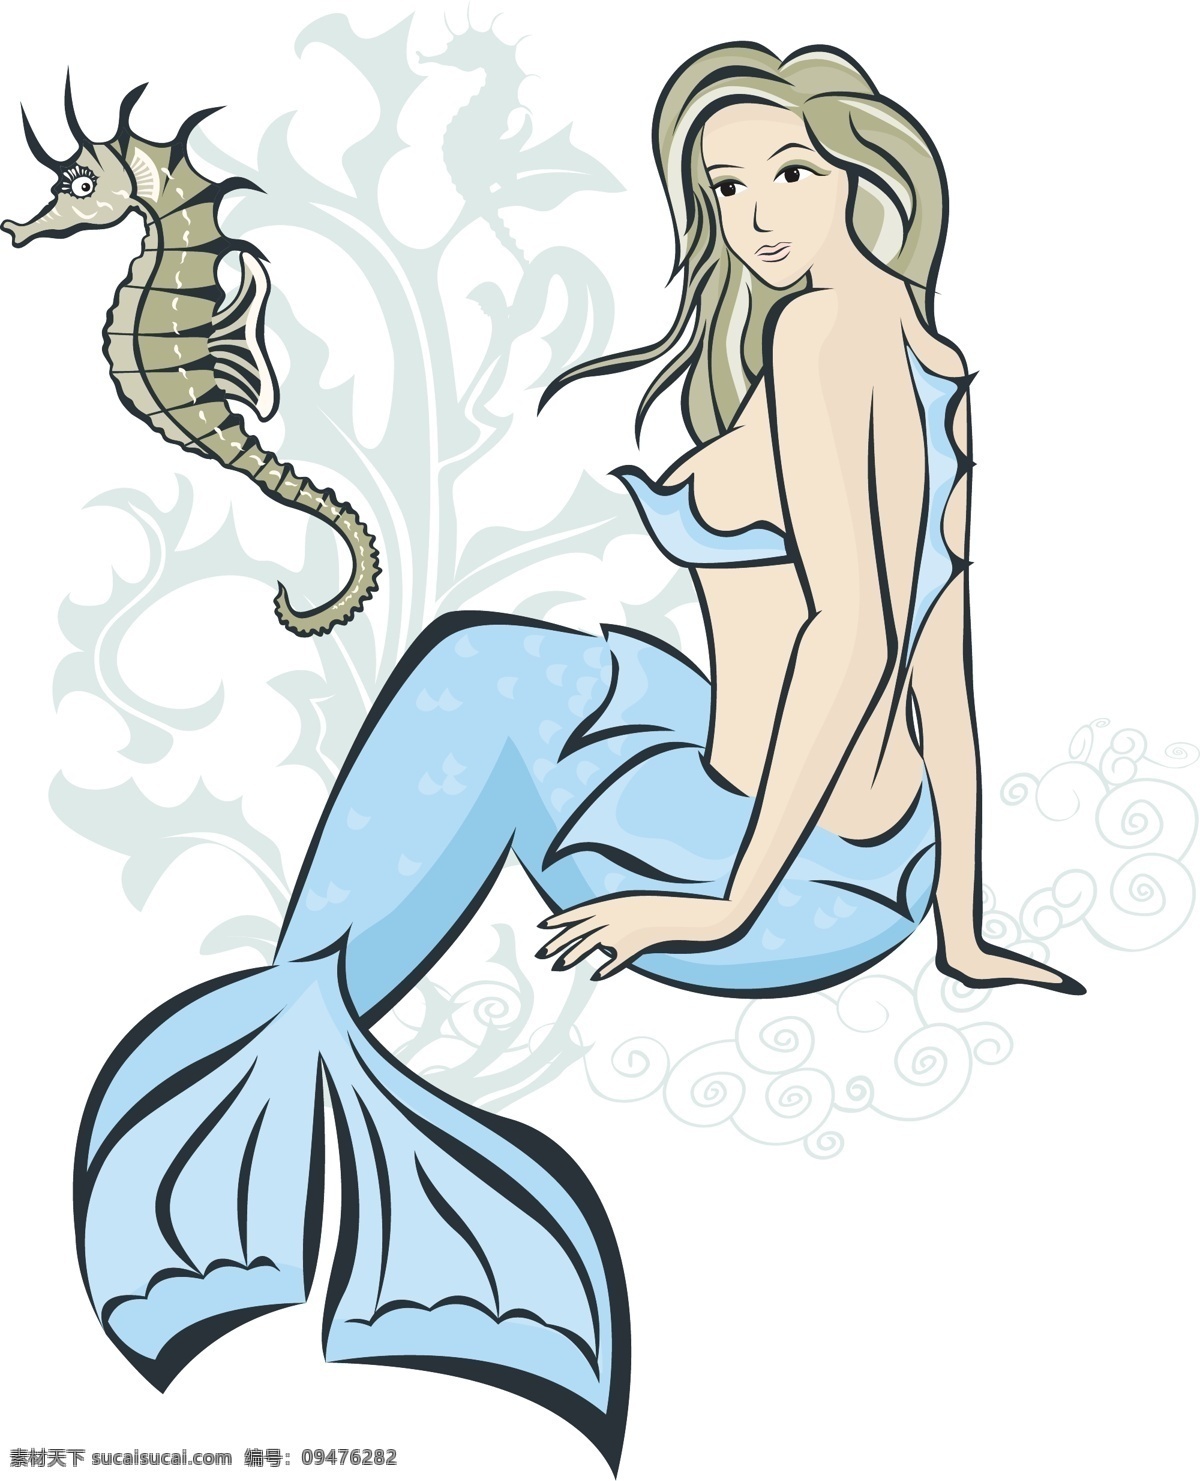 美人鱼和海马 美人鱼 卡通 海底世界 海草 海马 水彩 儿童画 插画 装饰画 原创未分类 卡通设计